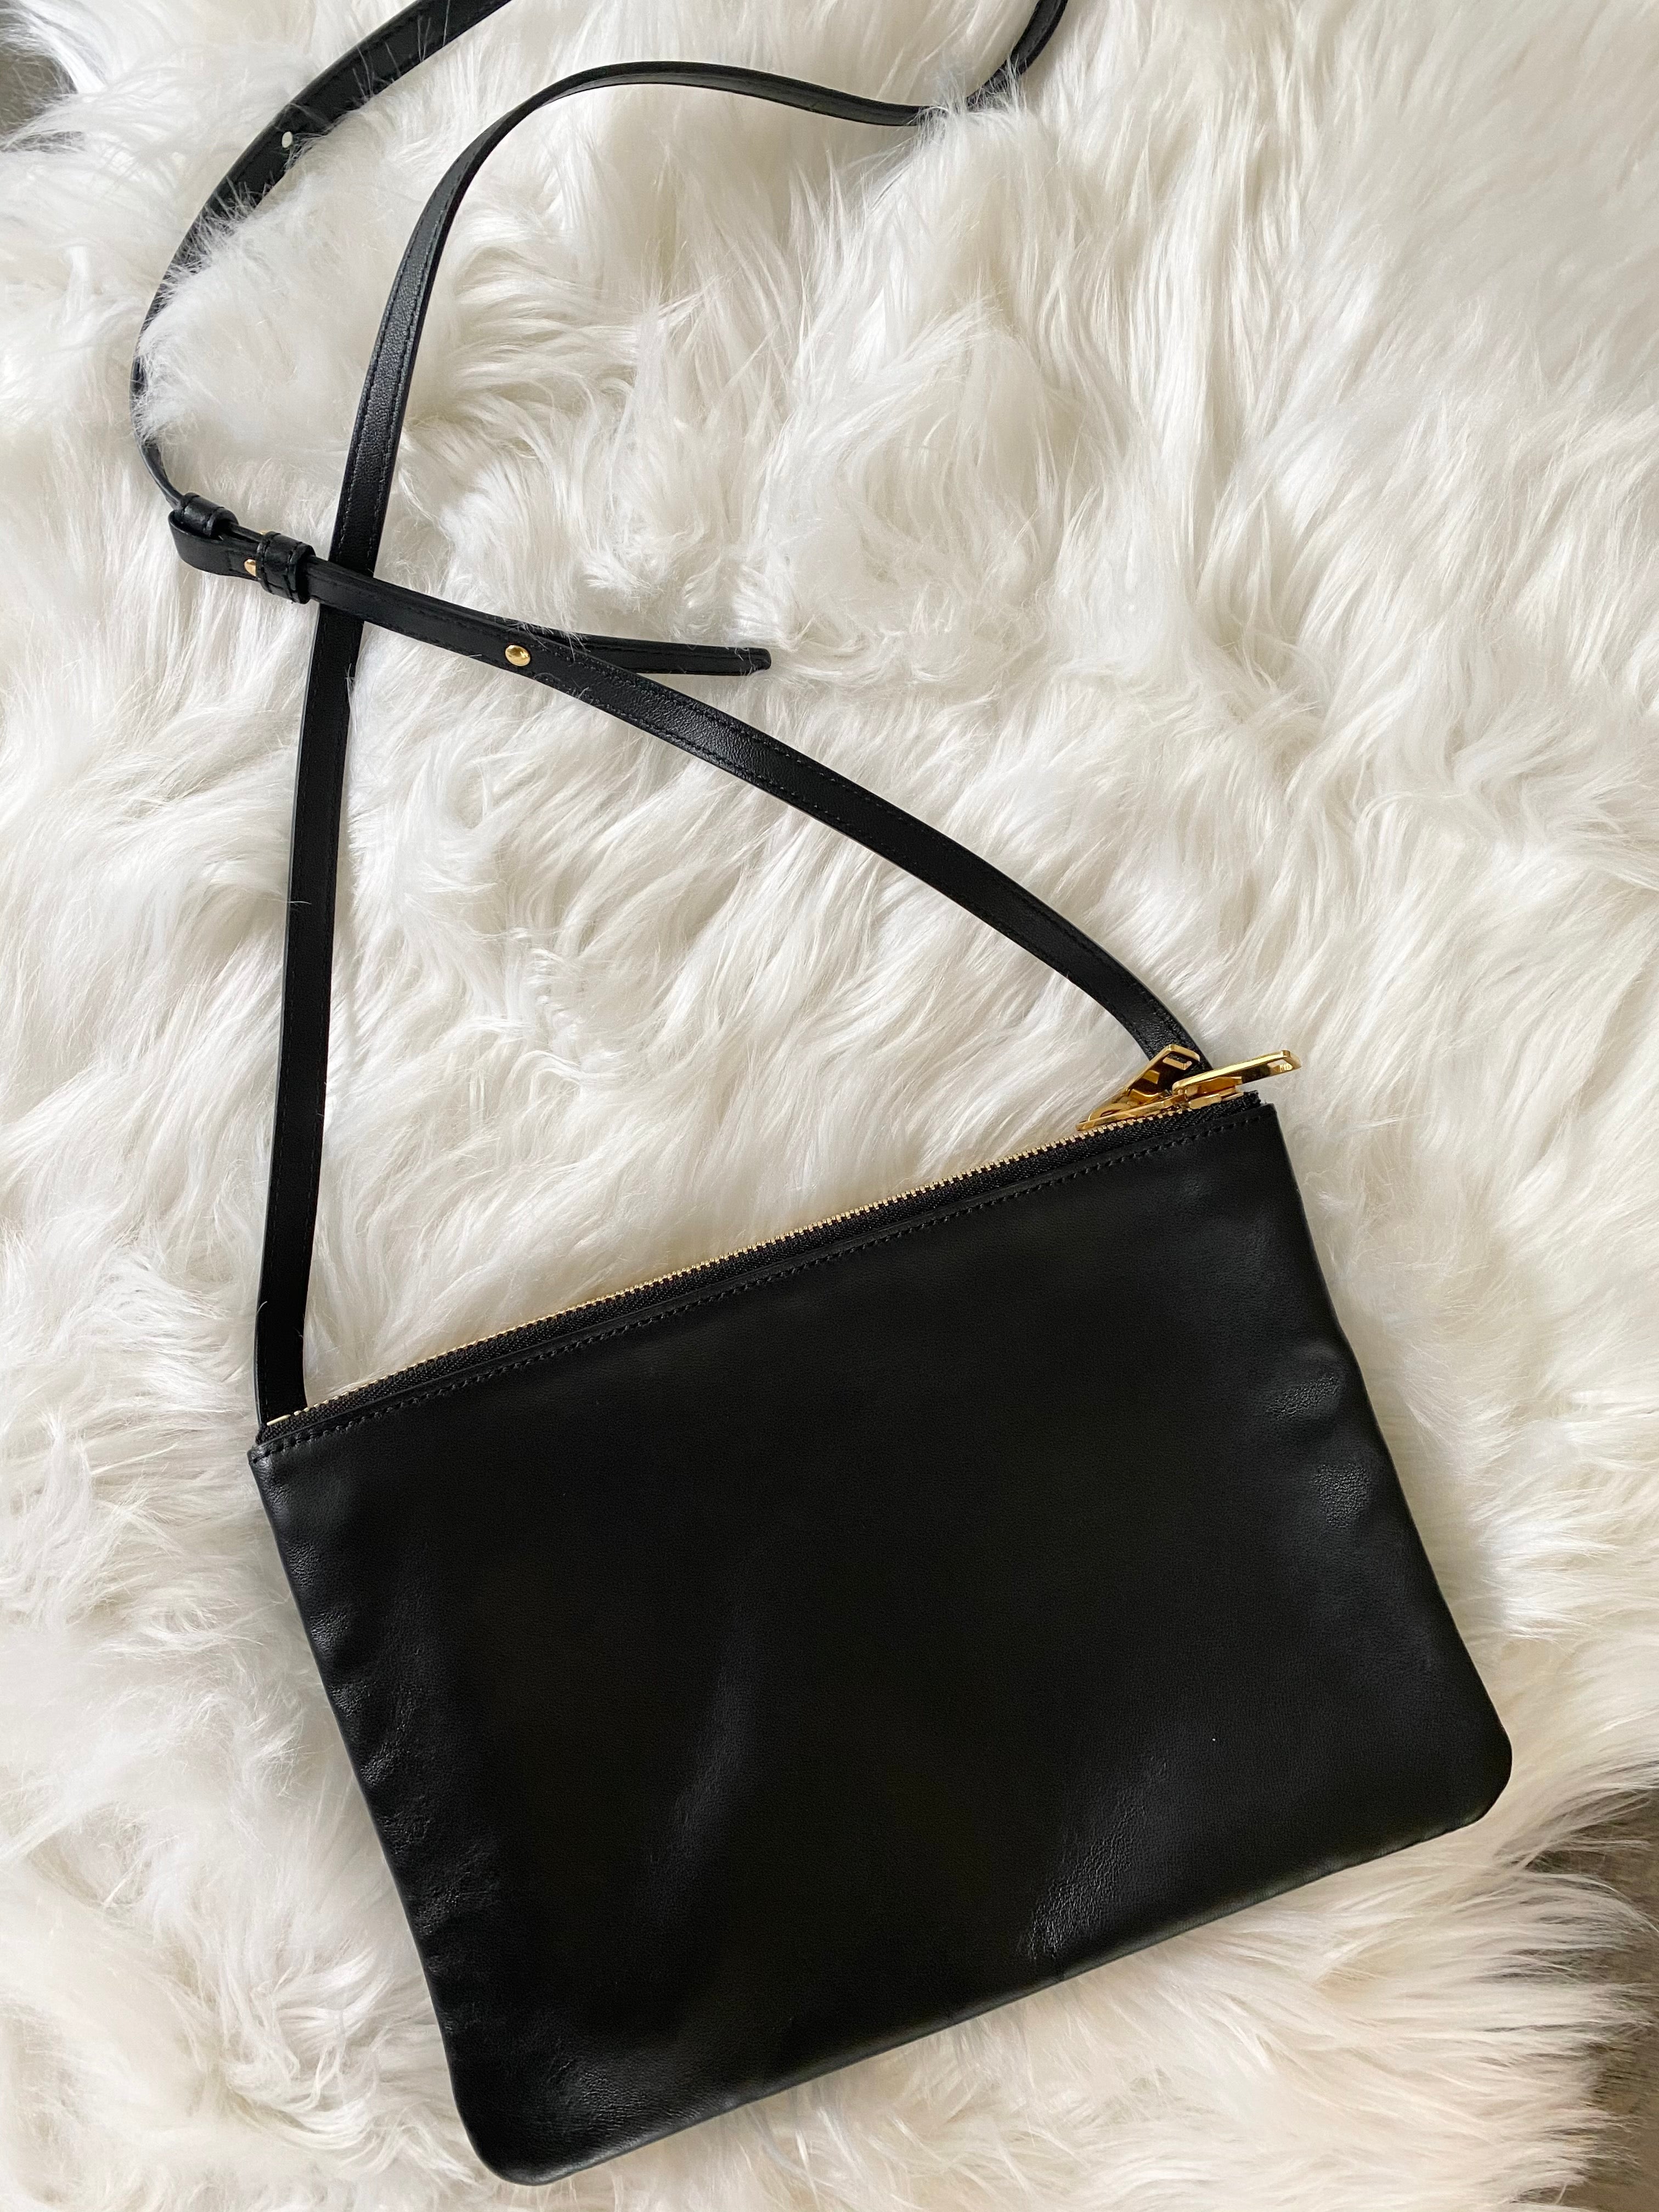 Celine trio bag – Beccas Bags